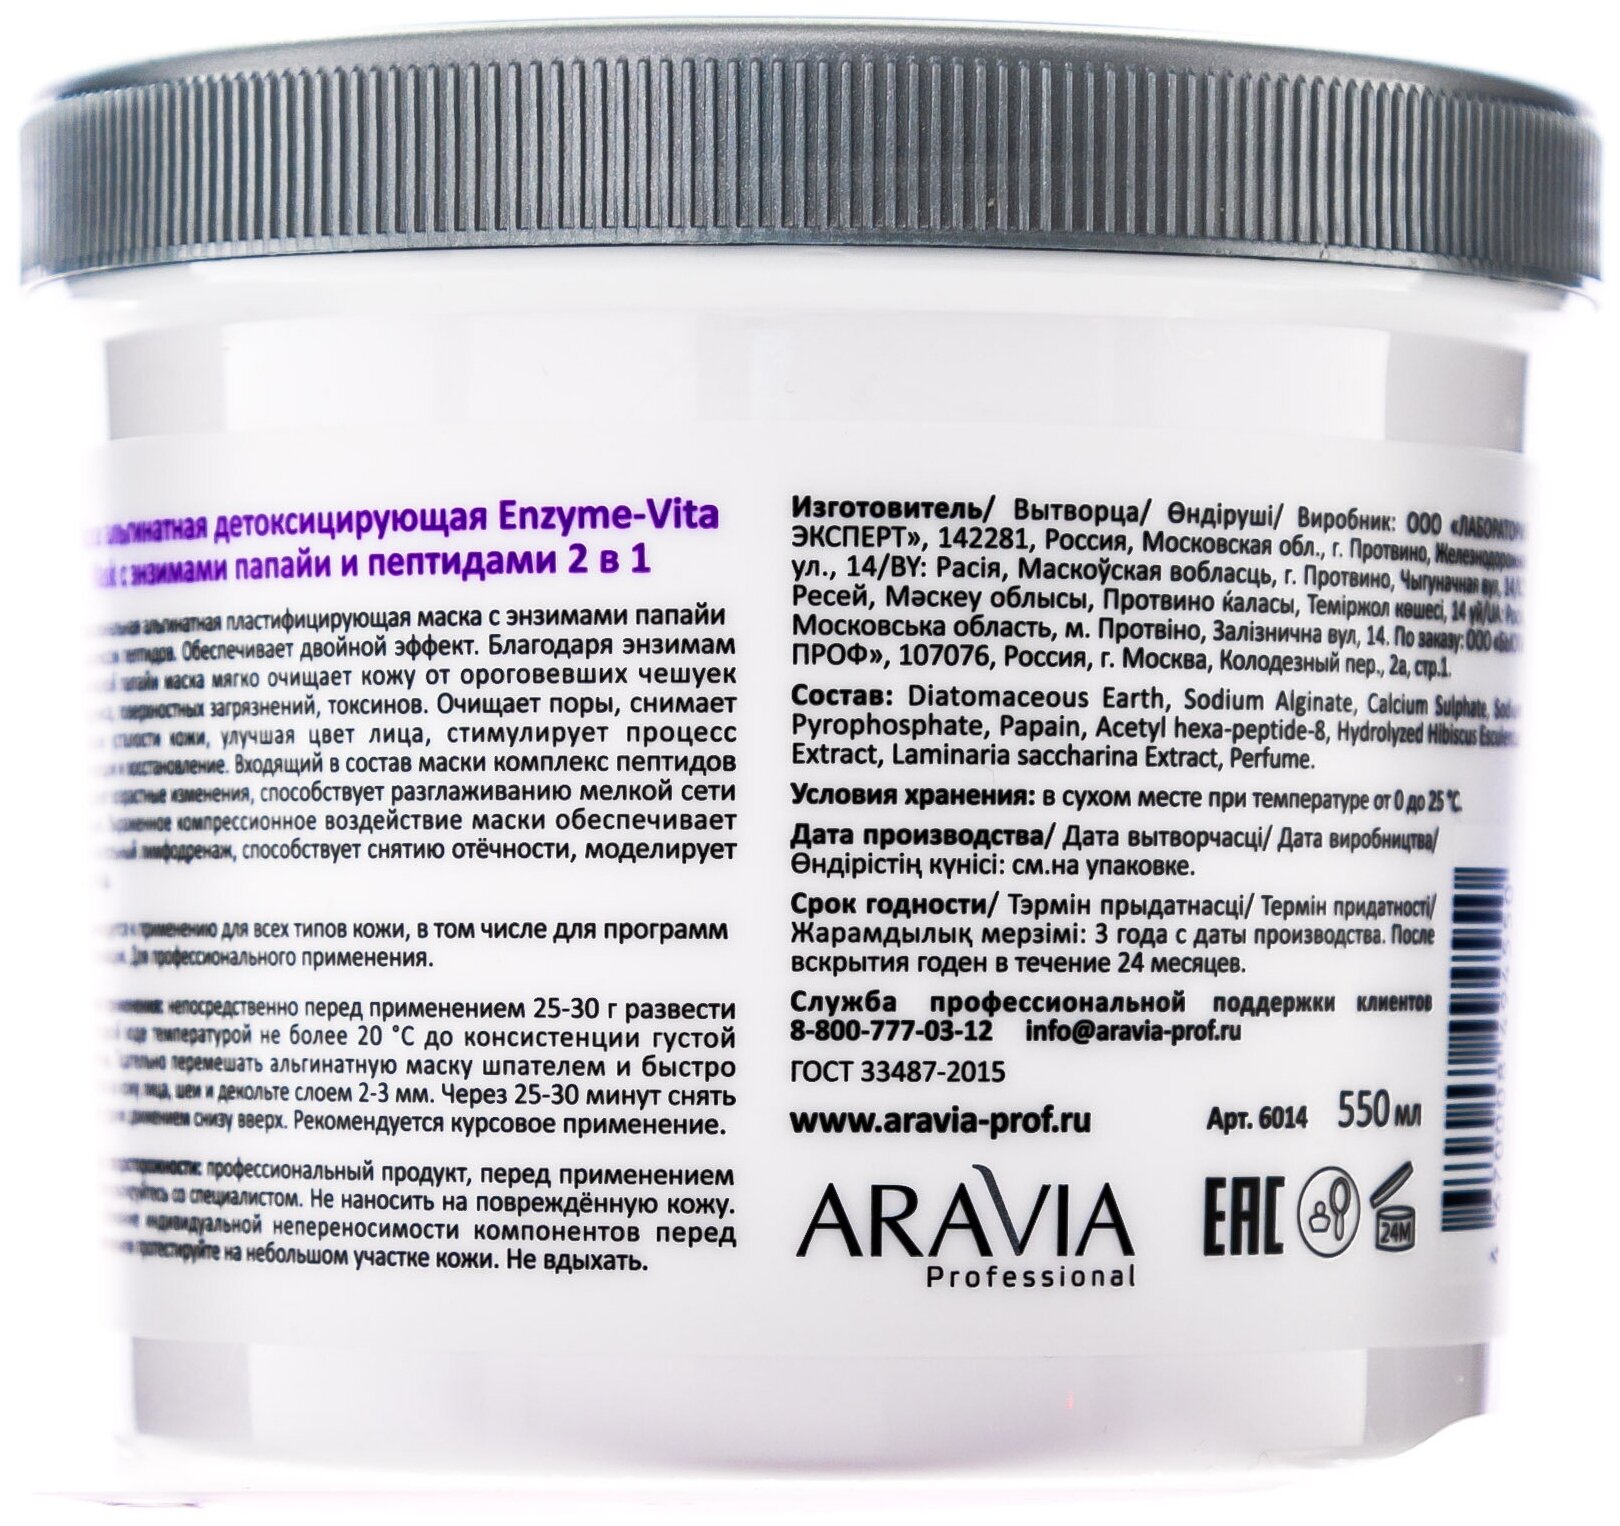 Aravia professional Маска альгинатная детоксицирующая Enzyme-Vita Mask с энзимами папайи и пептидами 2 в 1, 550 мл (Aravia professional, ) - фото №12